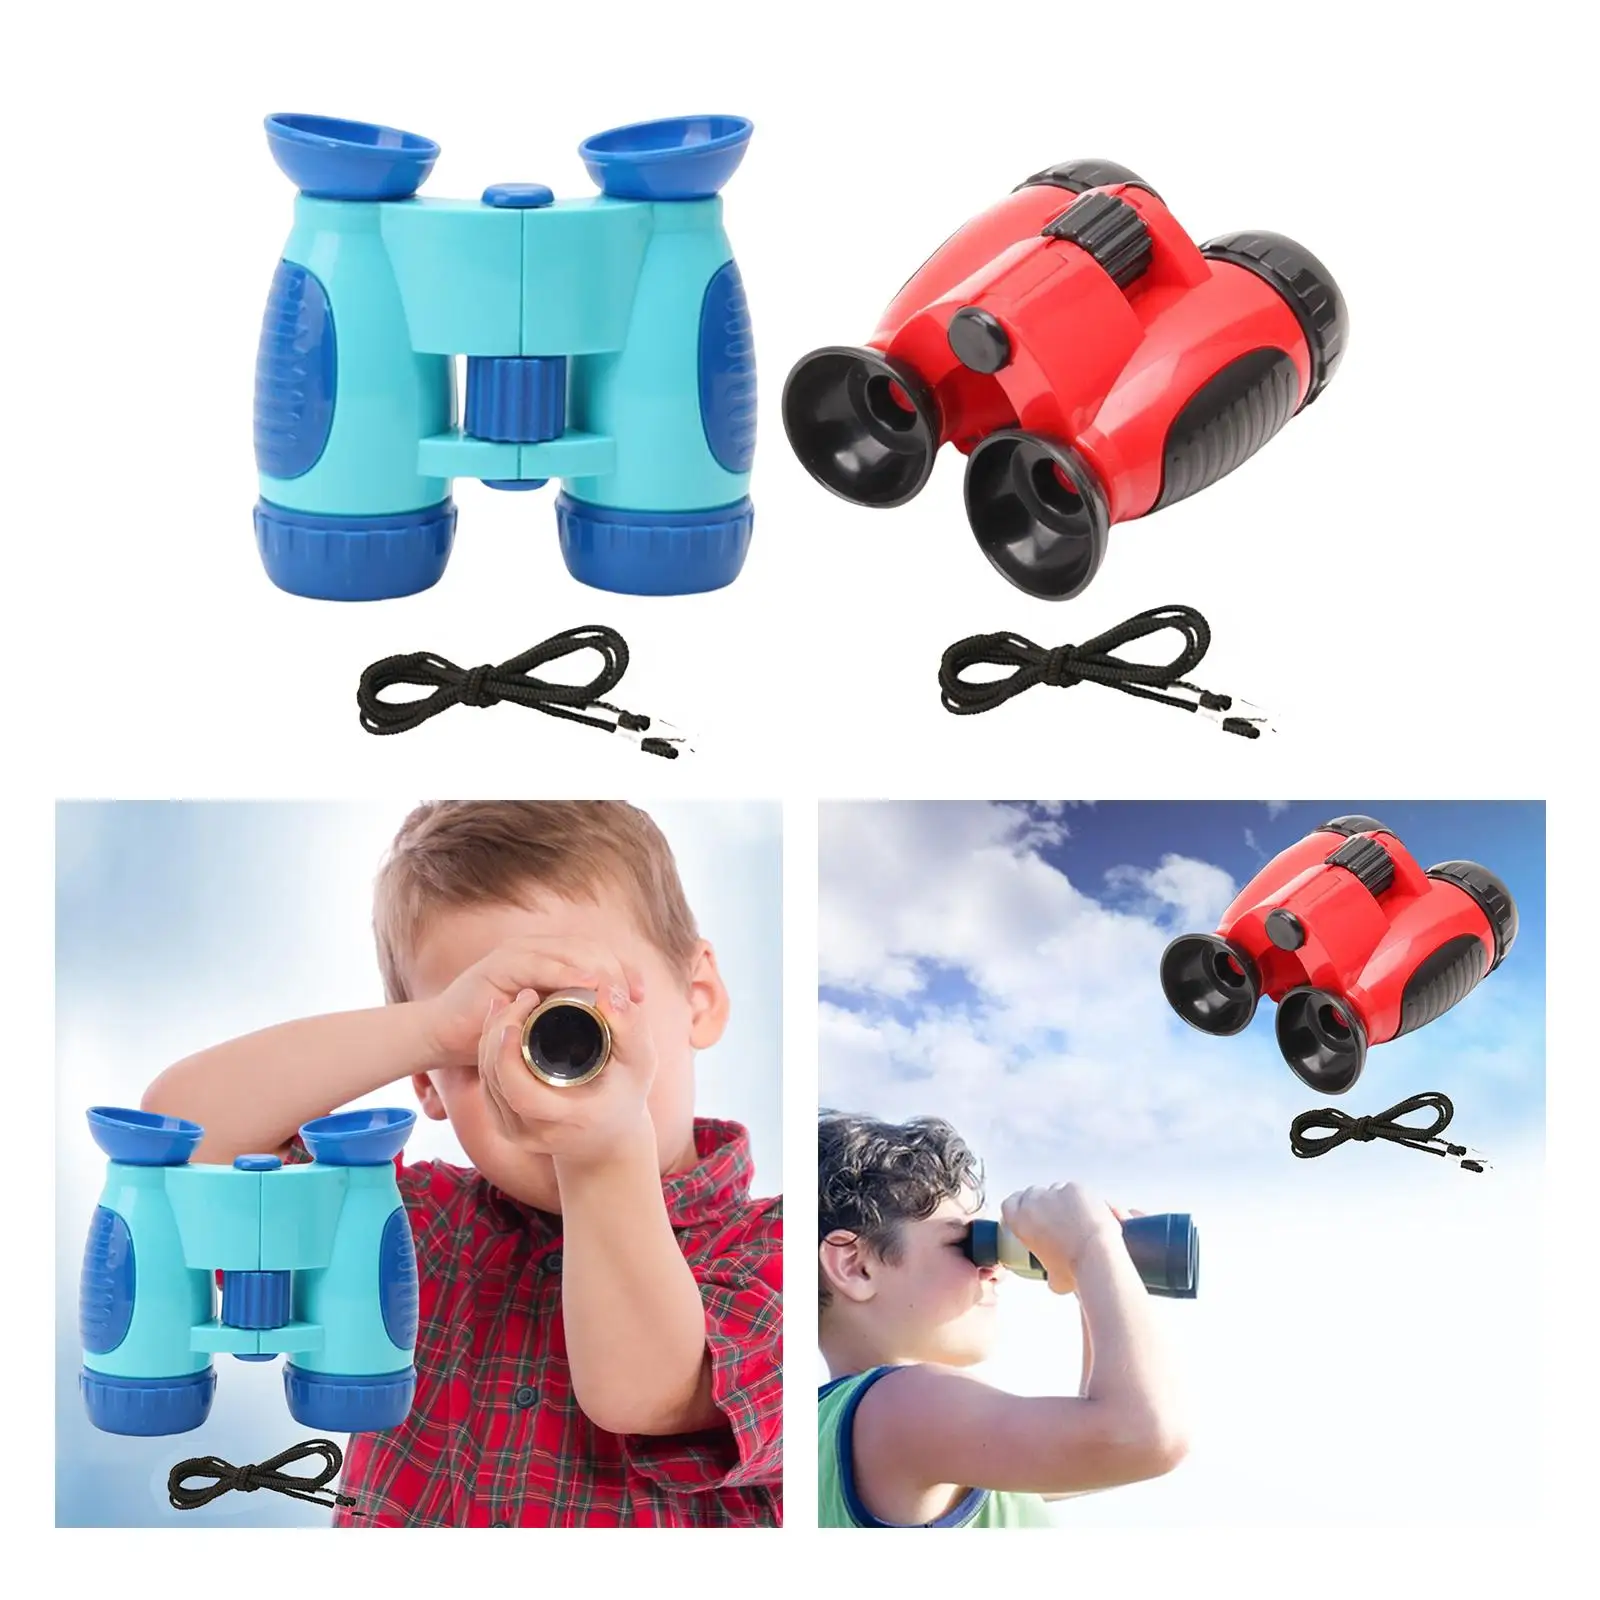 Children Telescope Portable Sciences Toy Binoculars Waterproof HD Children Binoculars for Hiking Camping Outdoor Children Boys